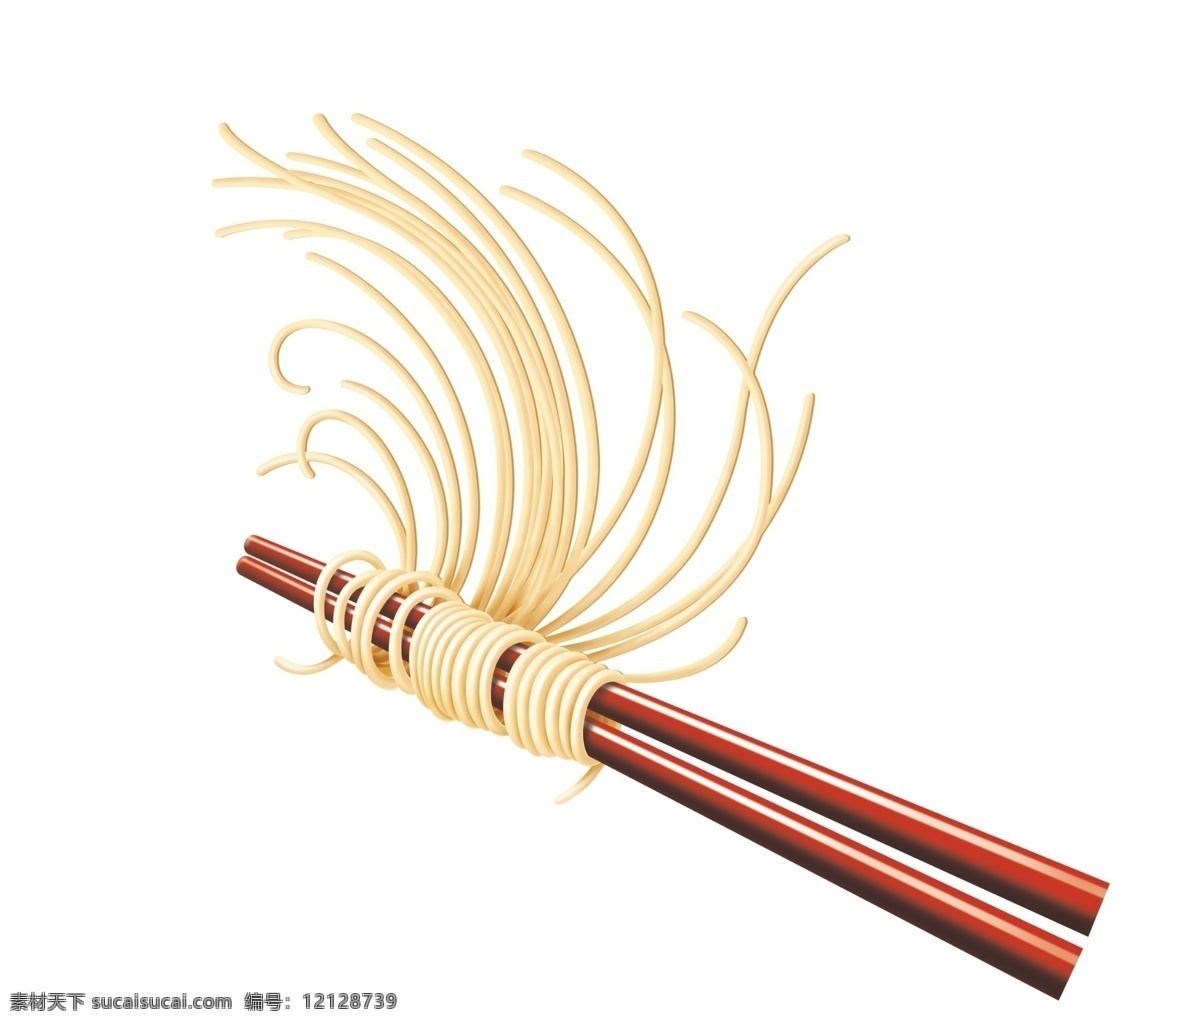 筷子 面条 食物 餐具 饮食 厨具 竹筷